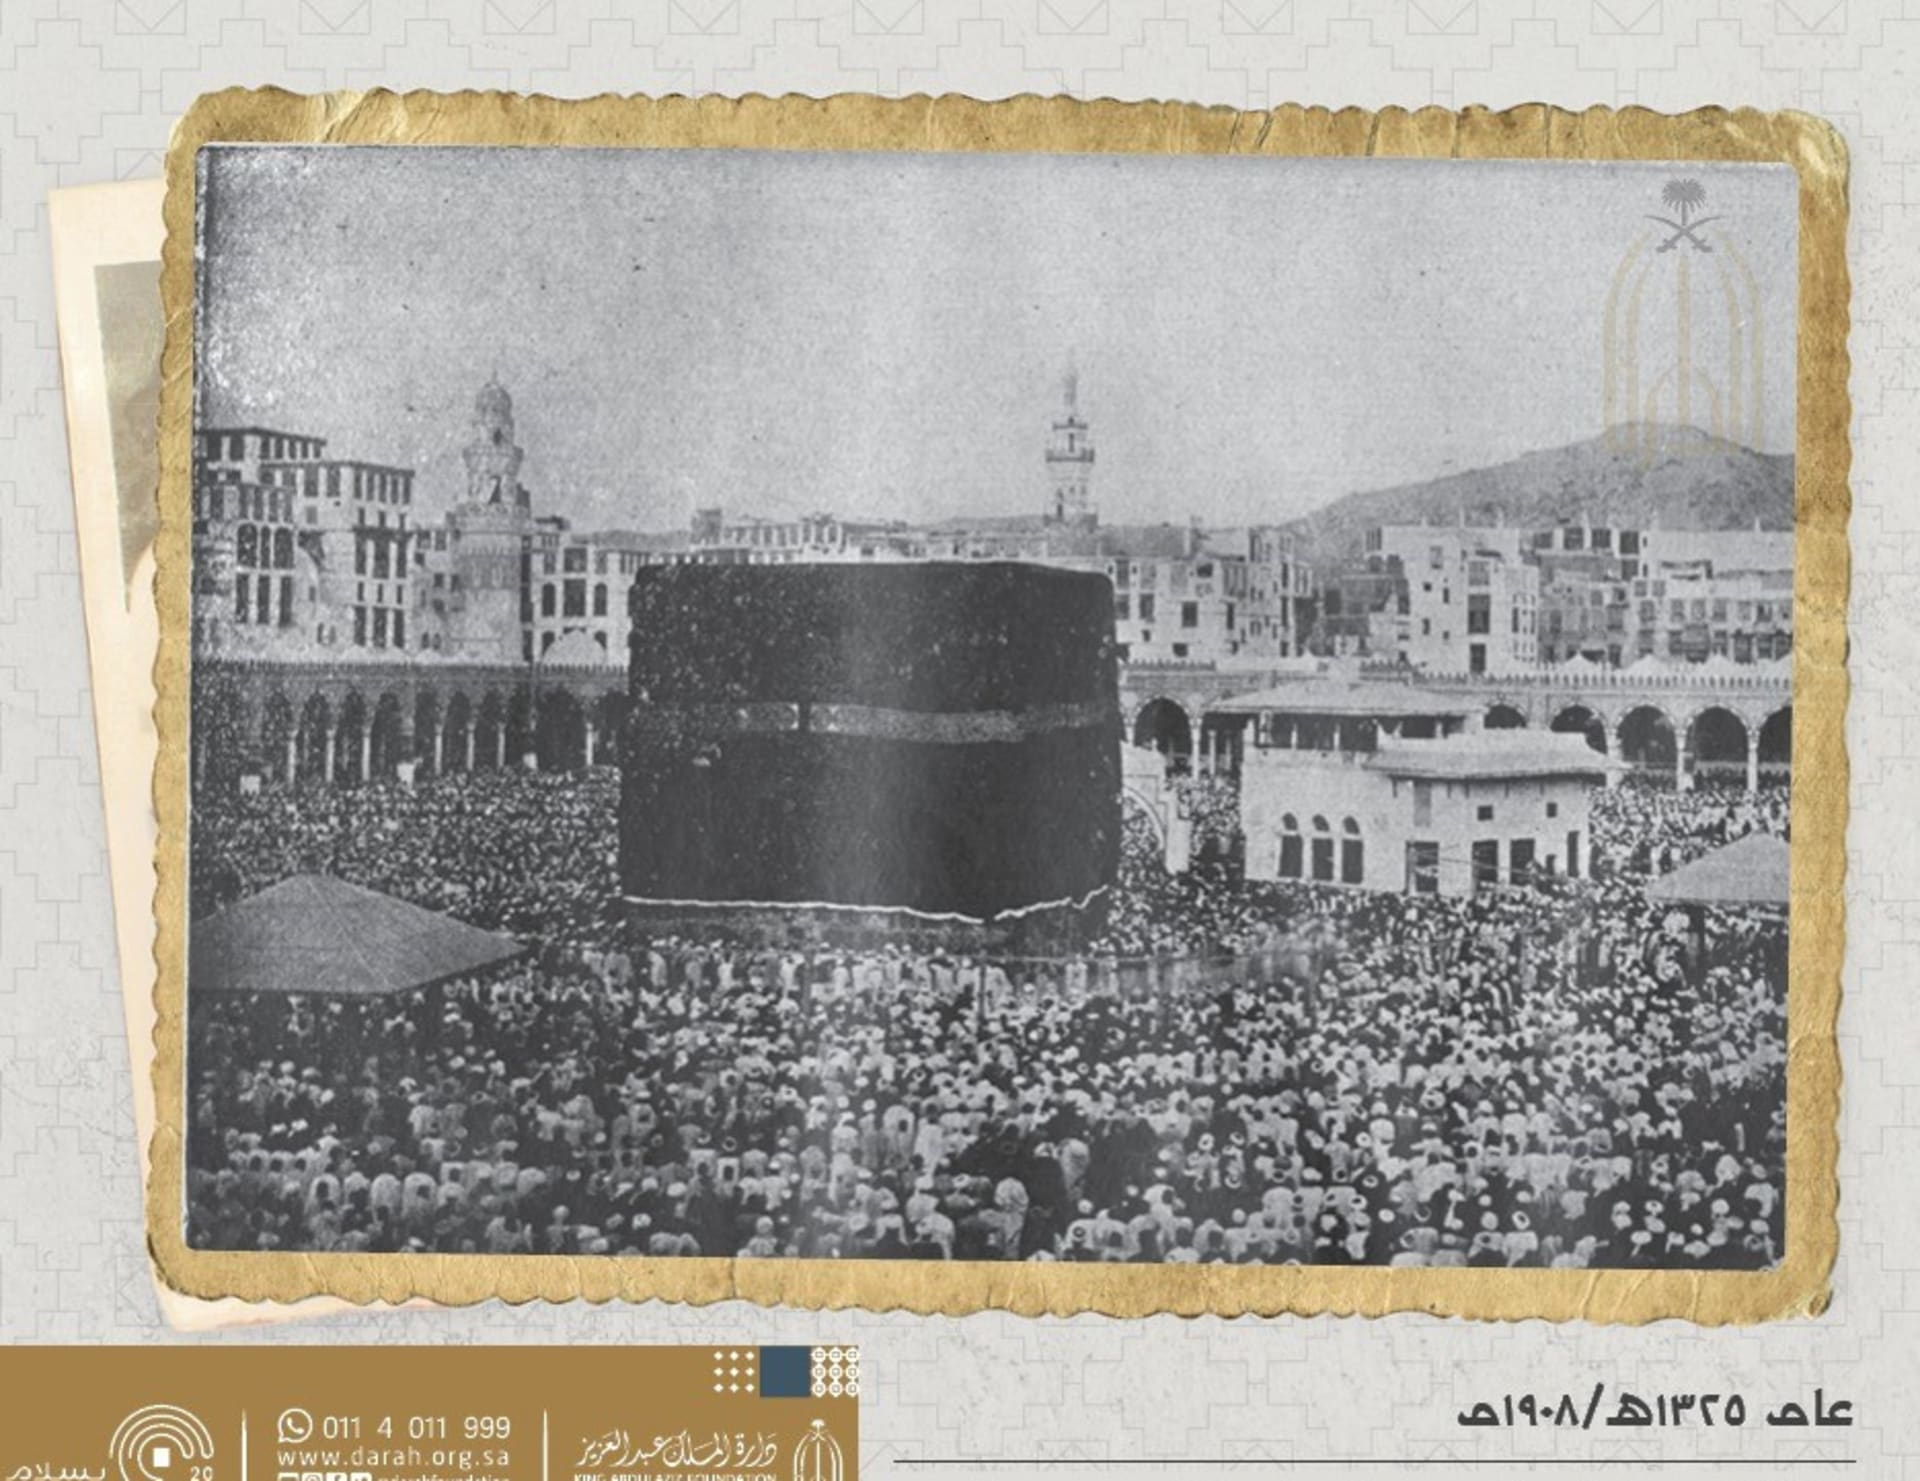 الت قطت في السعودية قبل 100 عام ألق نظرة على مواسم الحج عبر التاريخ Cnn Arabic